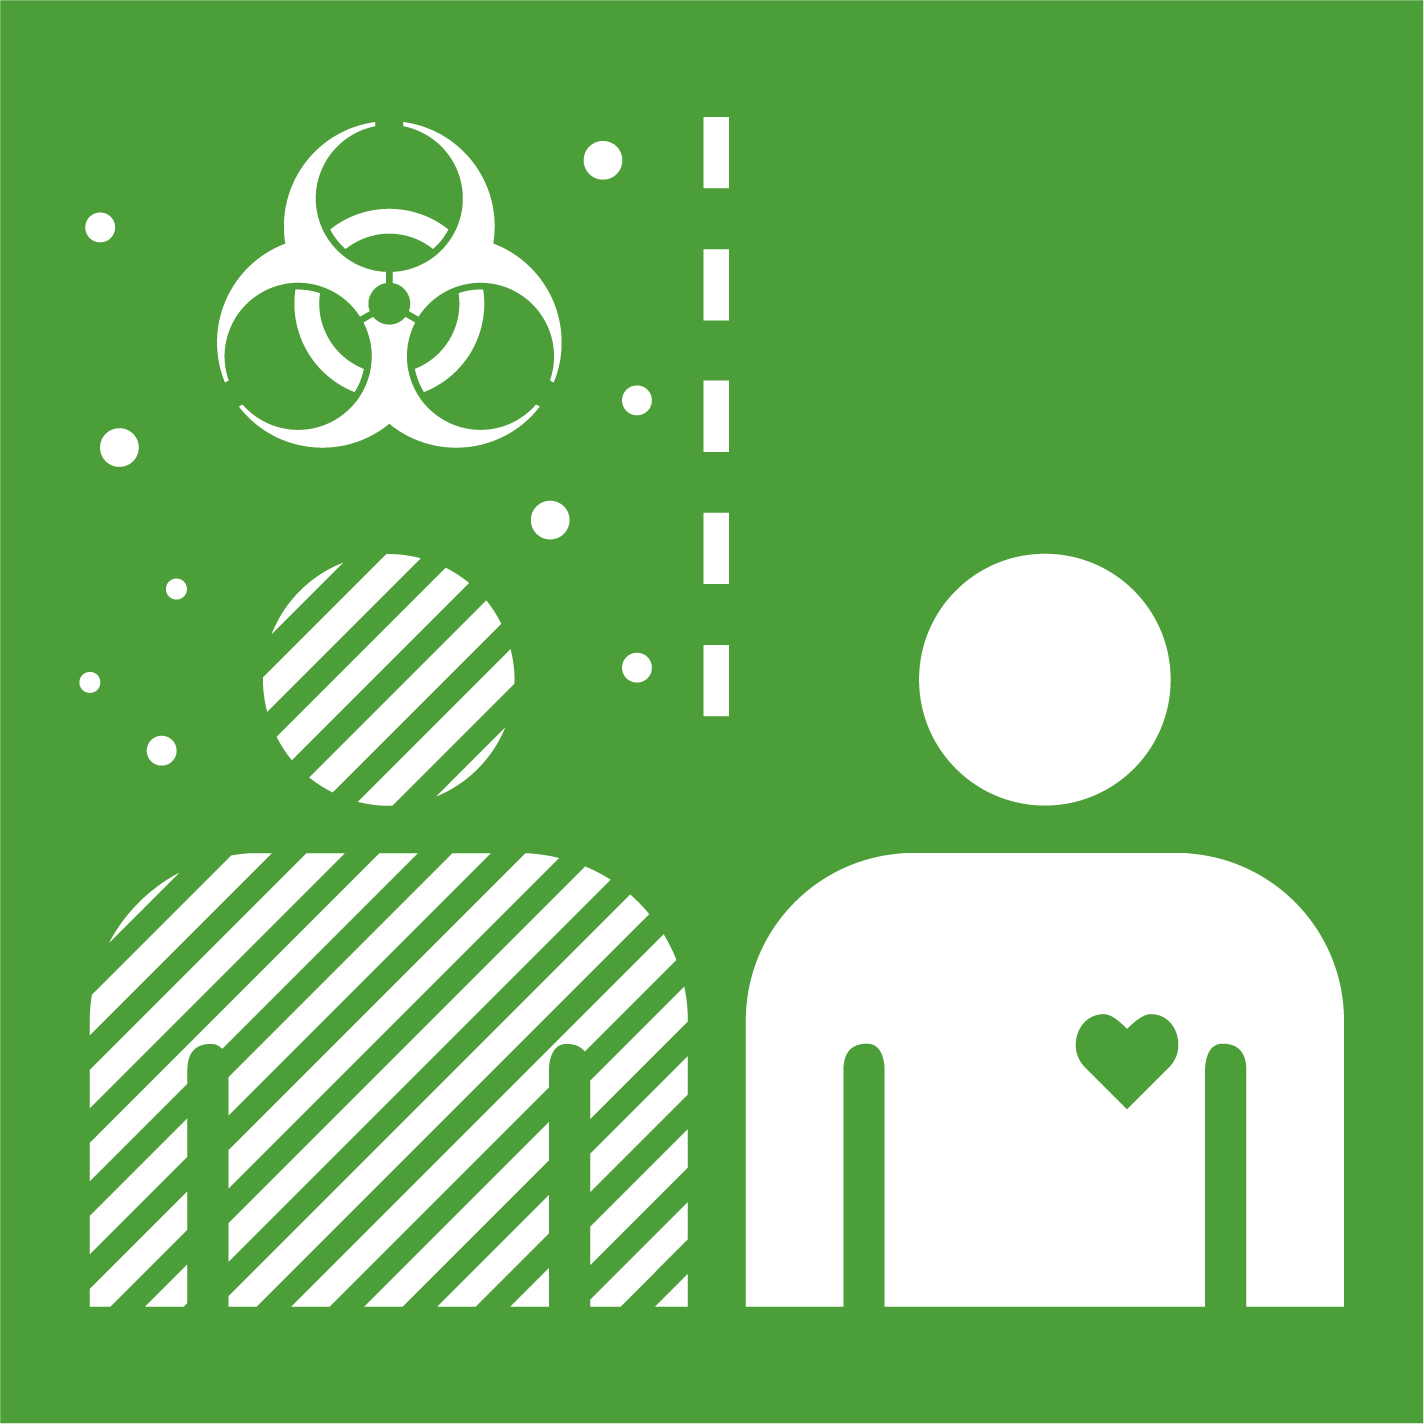 3.9 - Reducir las enfermedades y muertes causadas por productos químicos peligrosos y contaminación